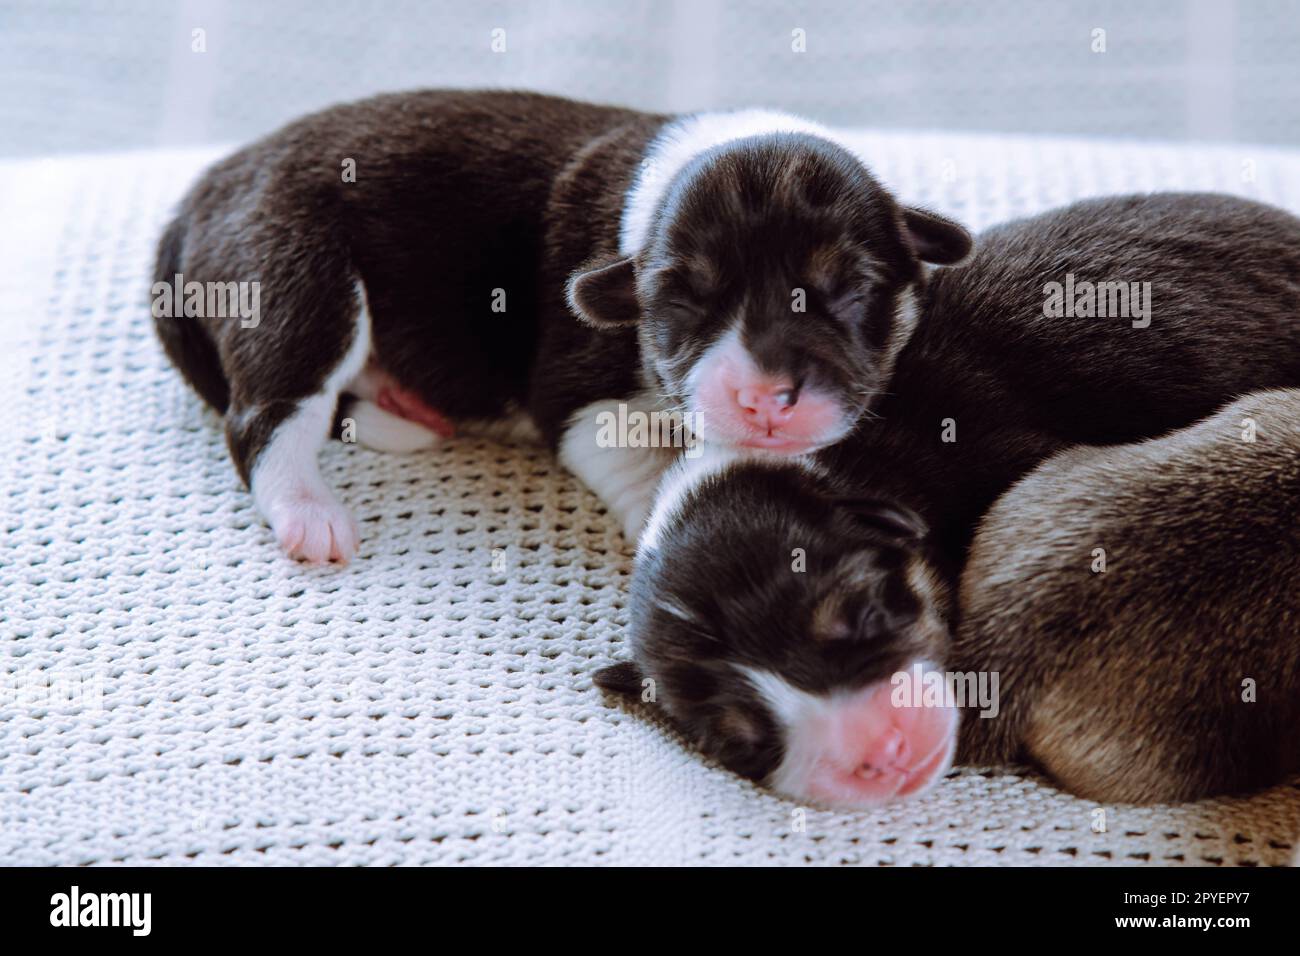 Snoozing multicolore brun, blanc et noir aveugles welsh corgi chiots dormant ensemble sur une couverture douce blanche. Soins infirmiers Banque D'Images